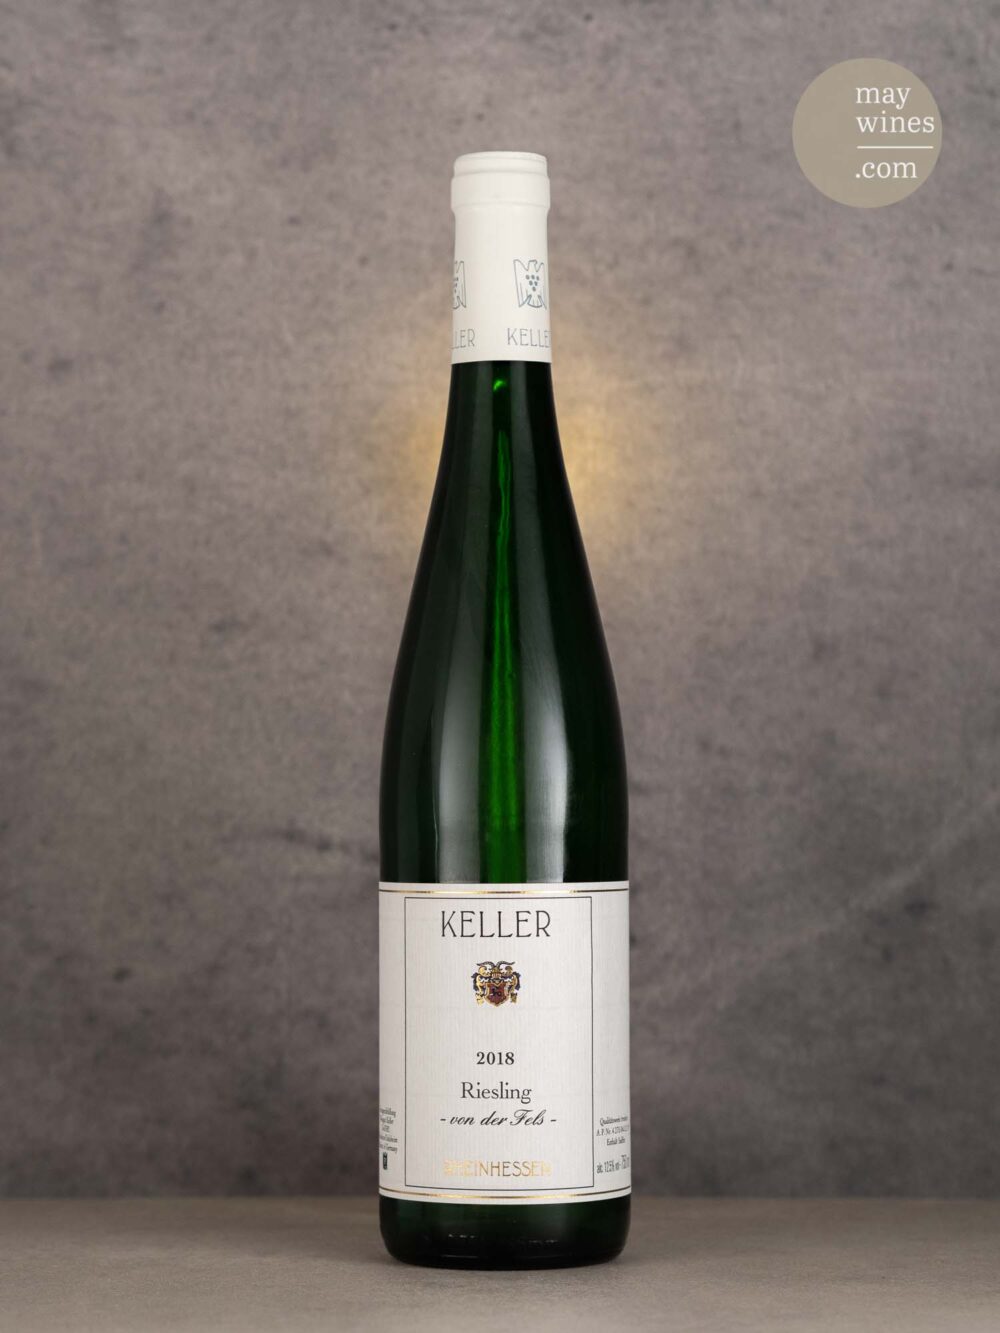 May Wines – Weißwein – 2018 Riesling "von der Fels" - Keller